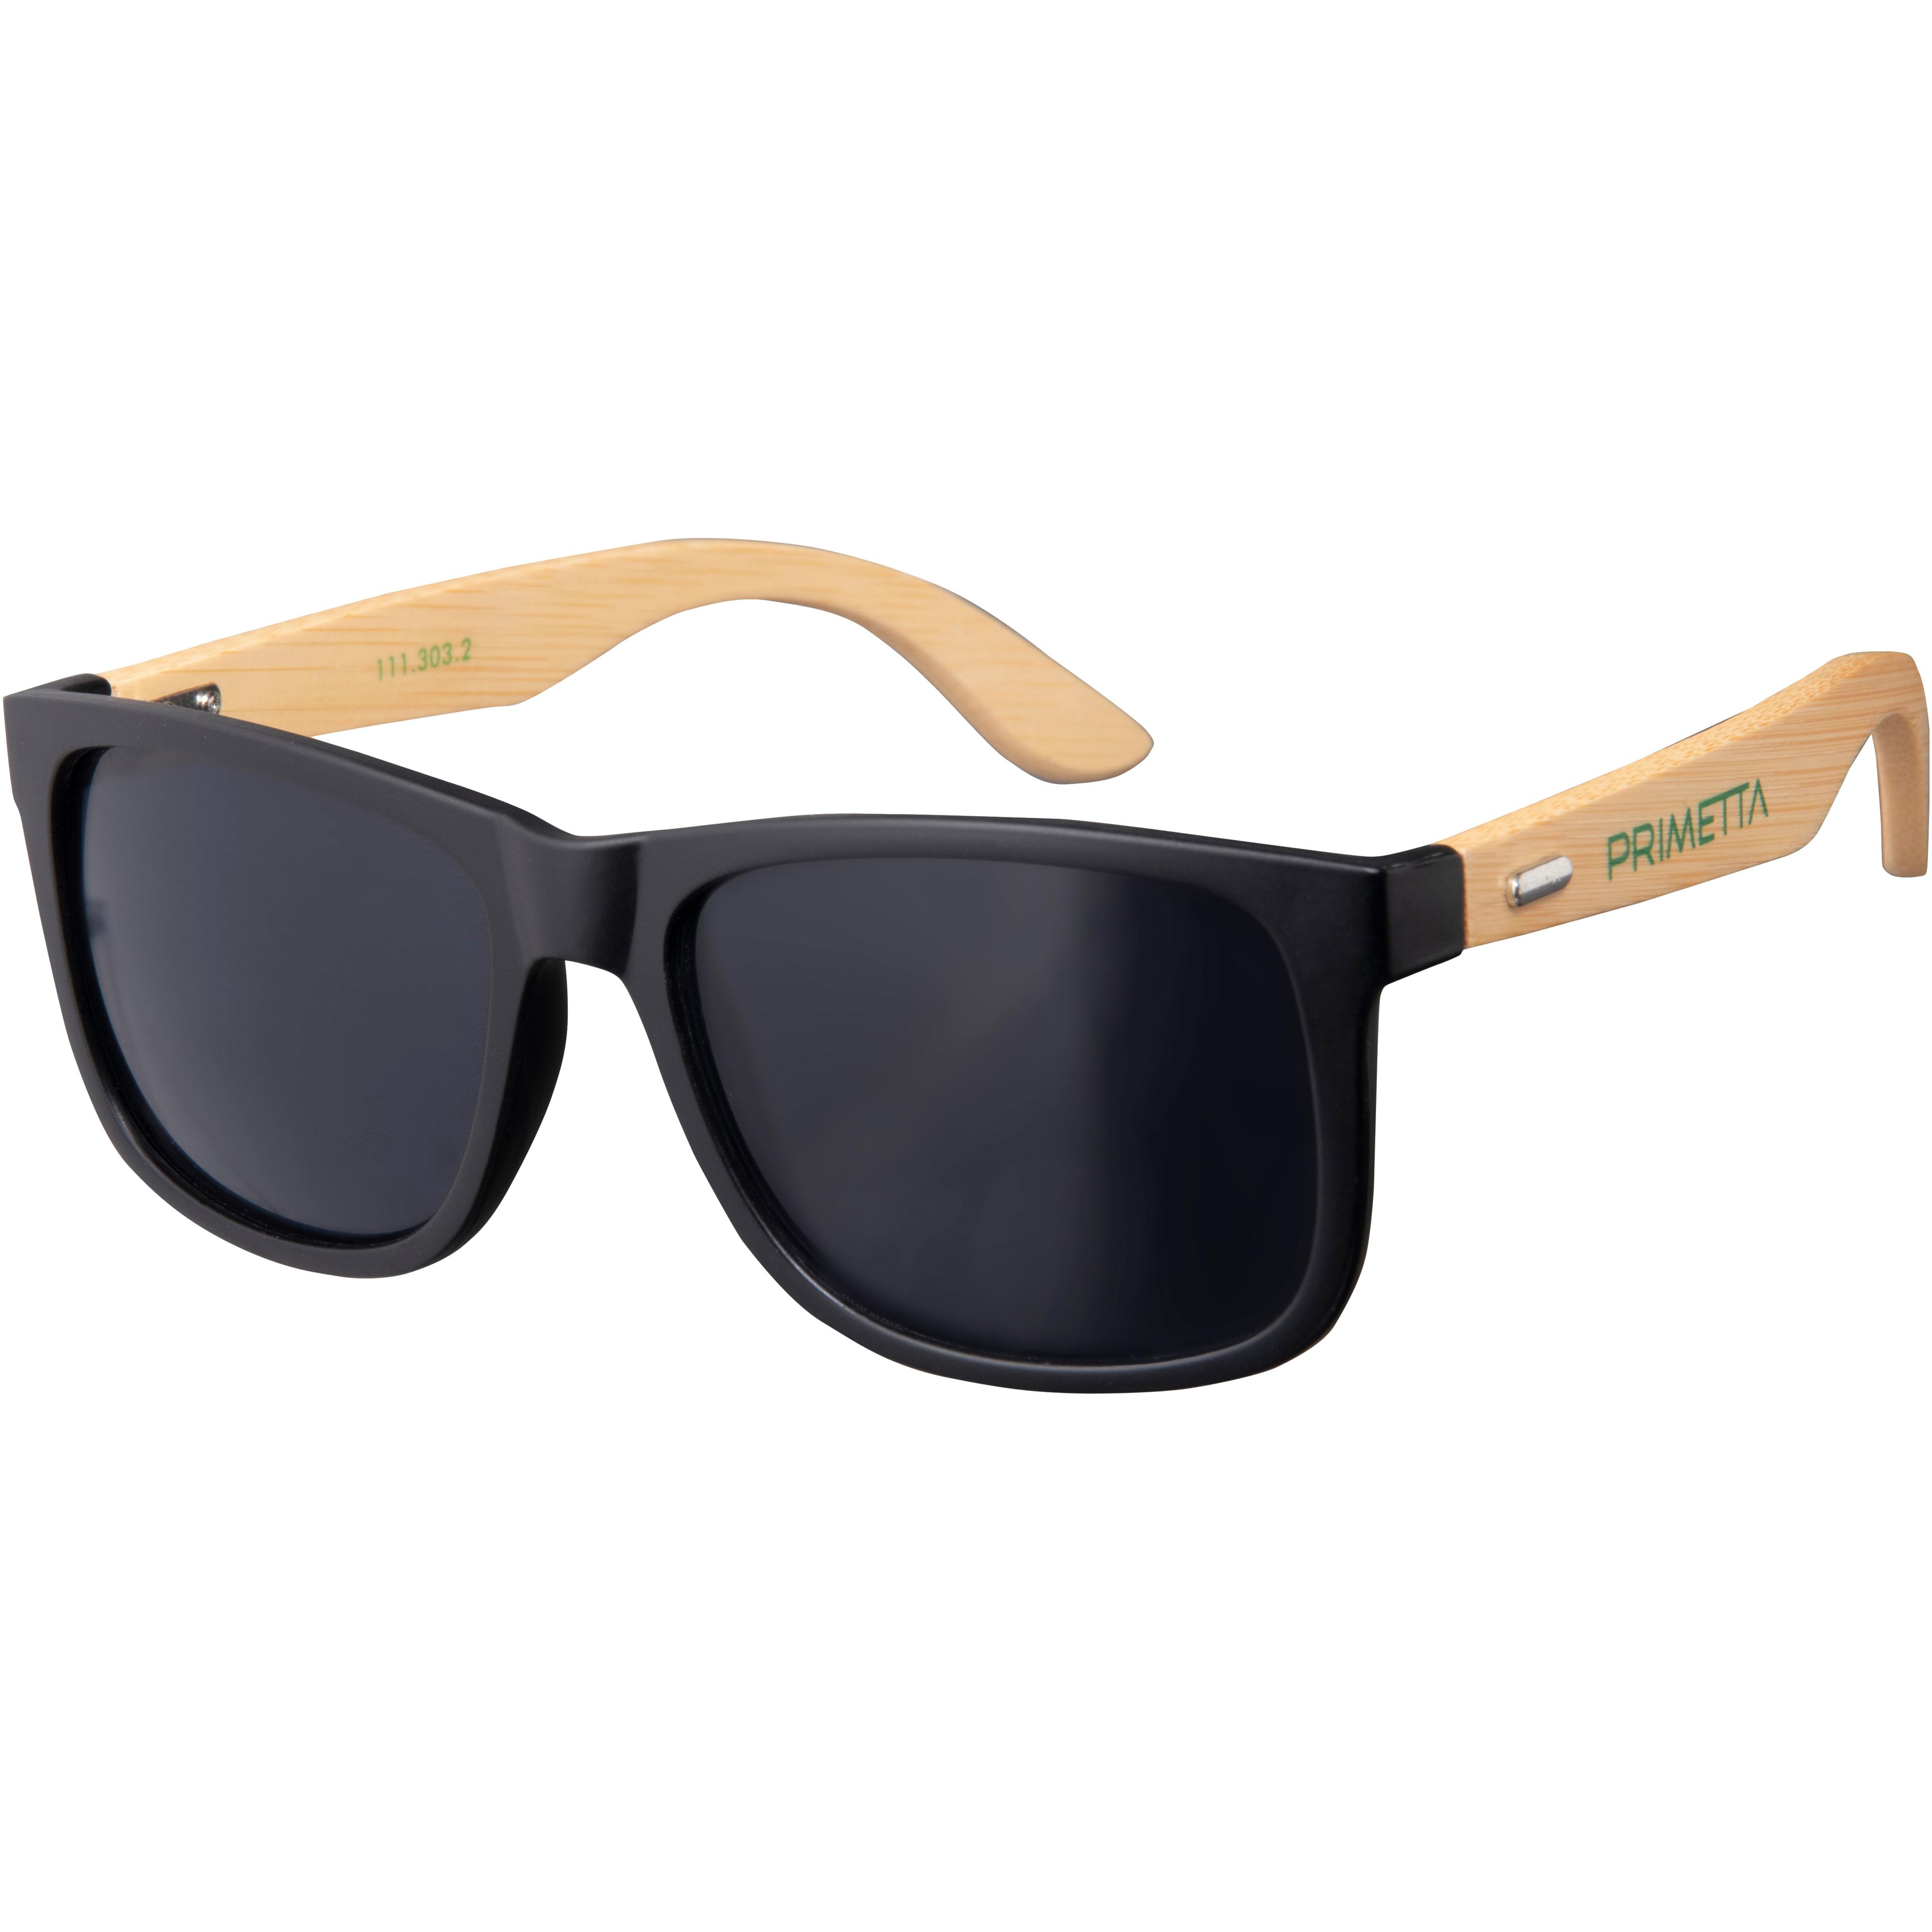 PRIMETTA Sonnenbrille kaufen front-wood im SportScheck Shop matt Online von black temple